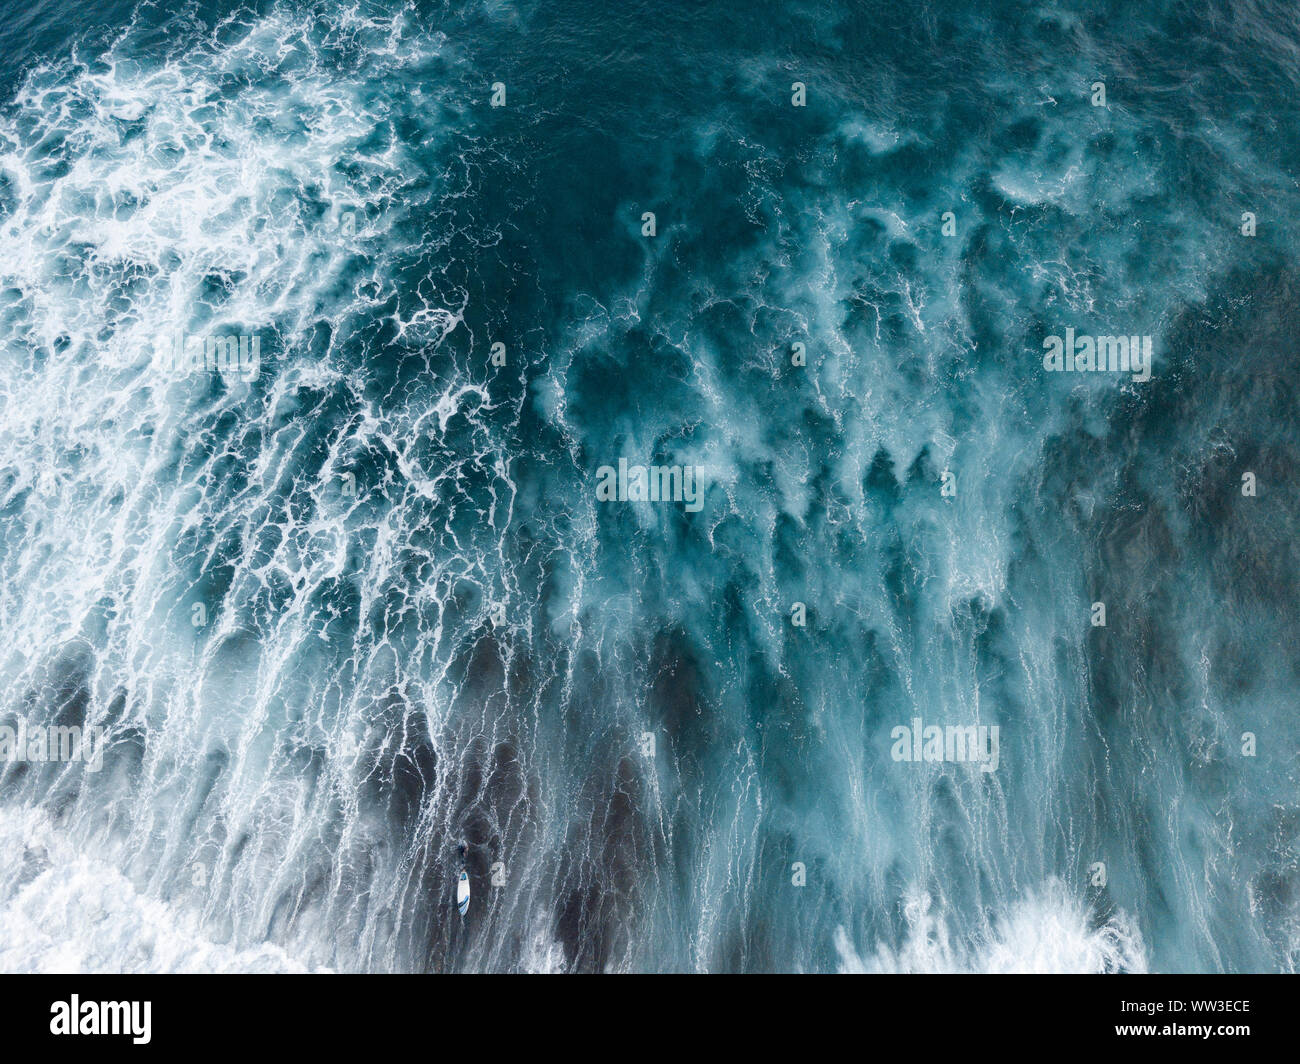 Vista aerea della superficie dell'oceano, onde, acqua bianca e surfisti Foto Stock